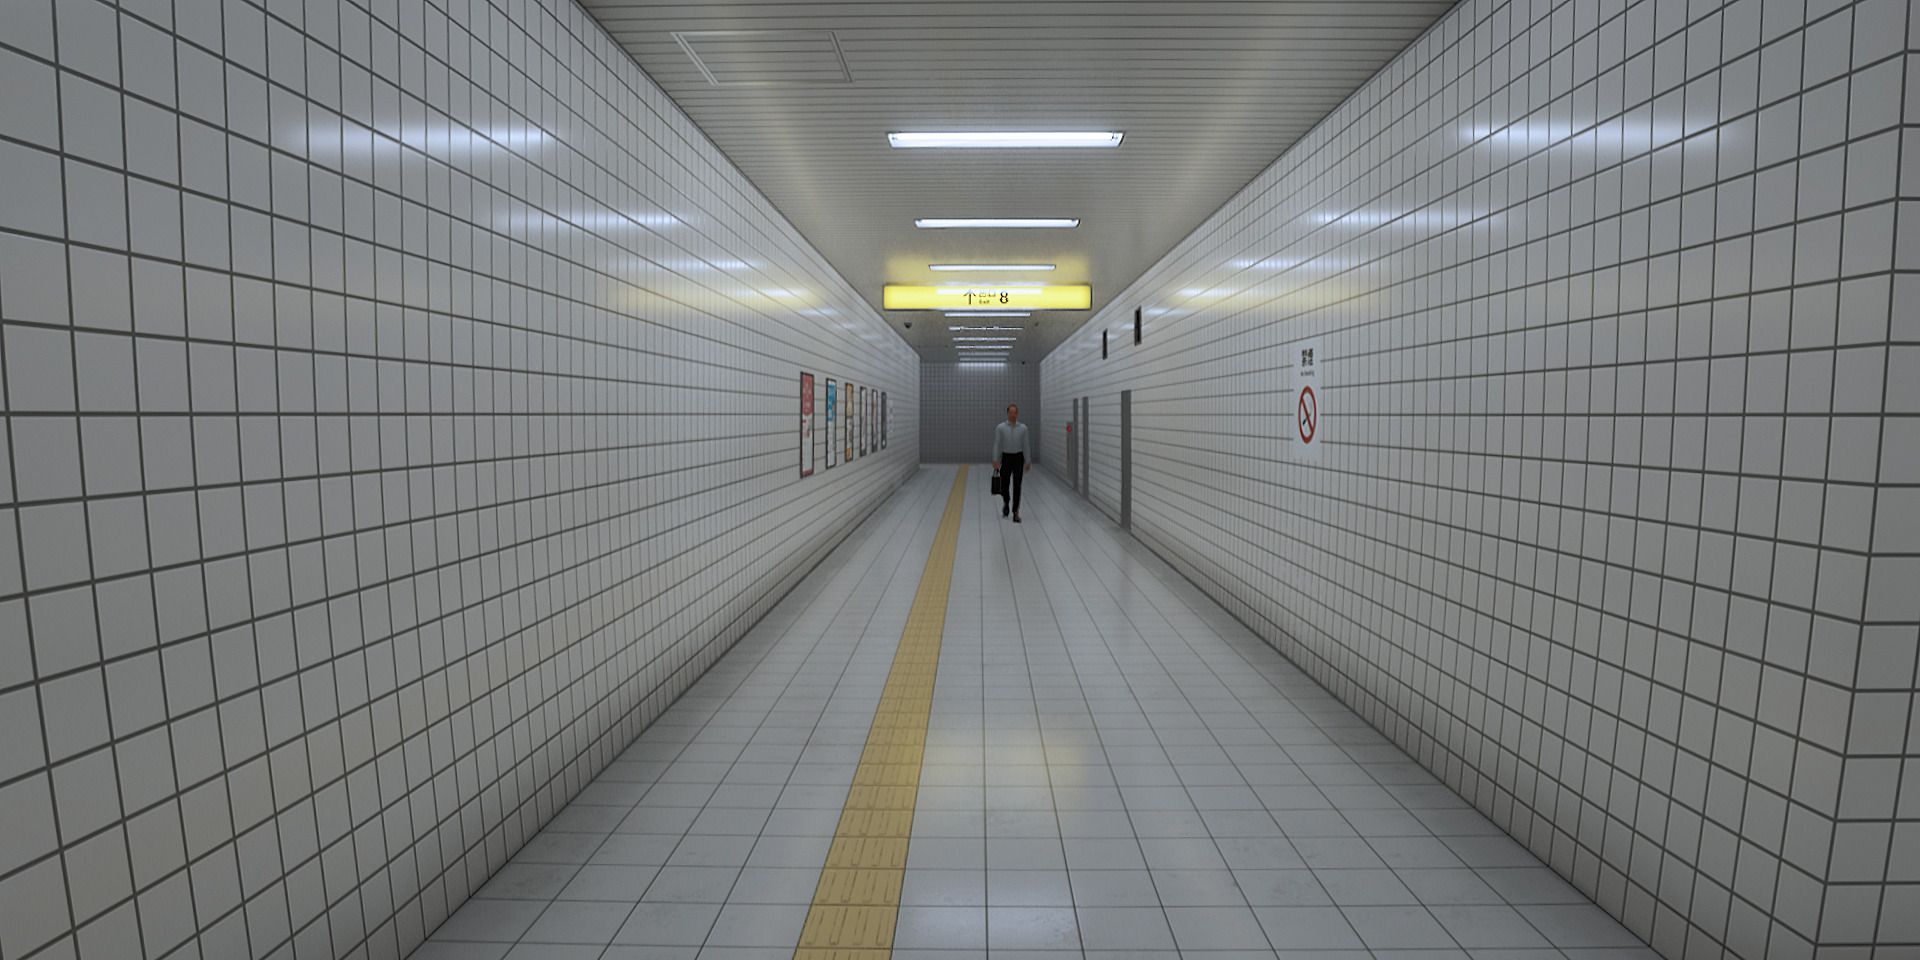 Imagem do corredor principal com um homem caminhando na 